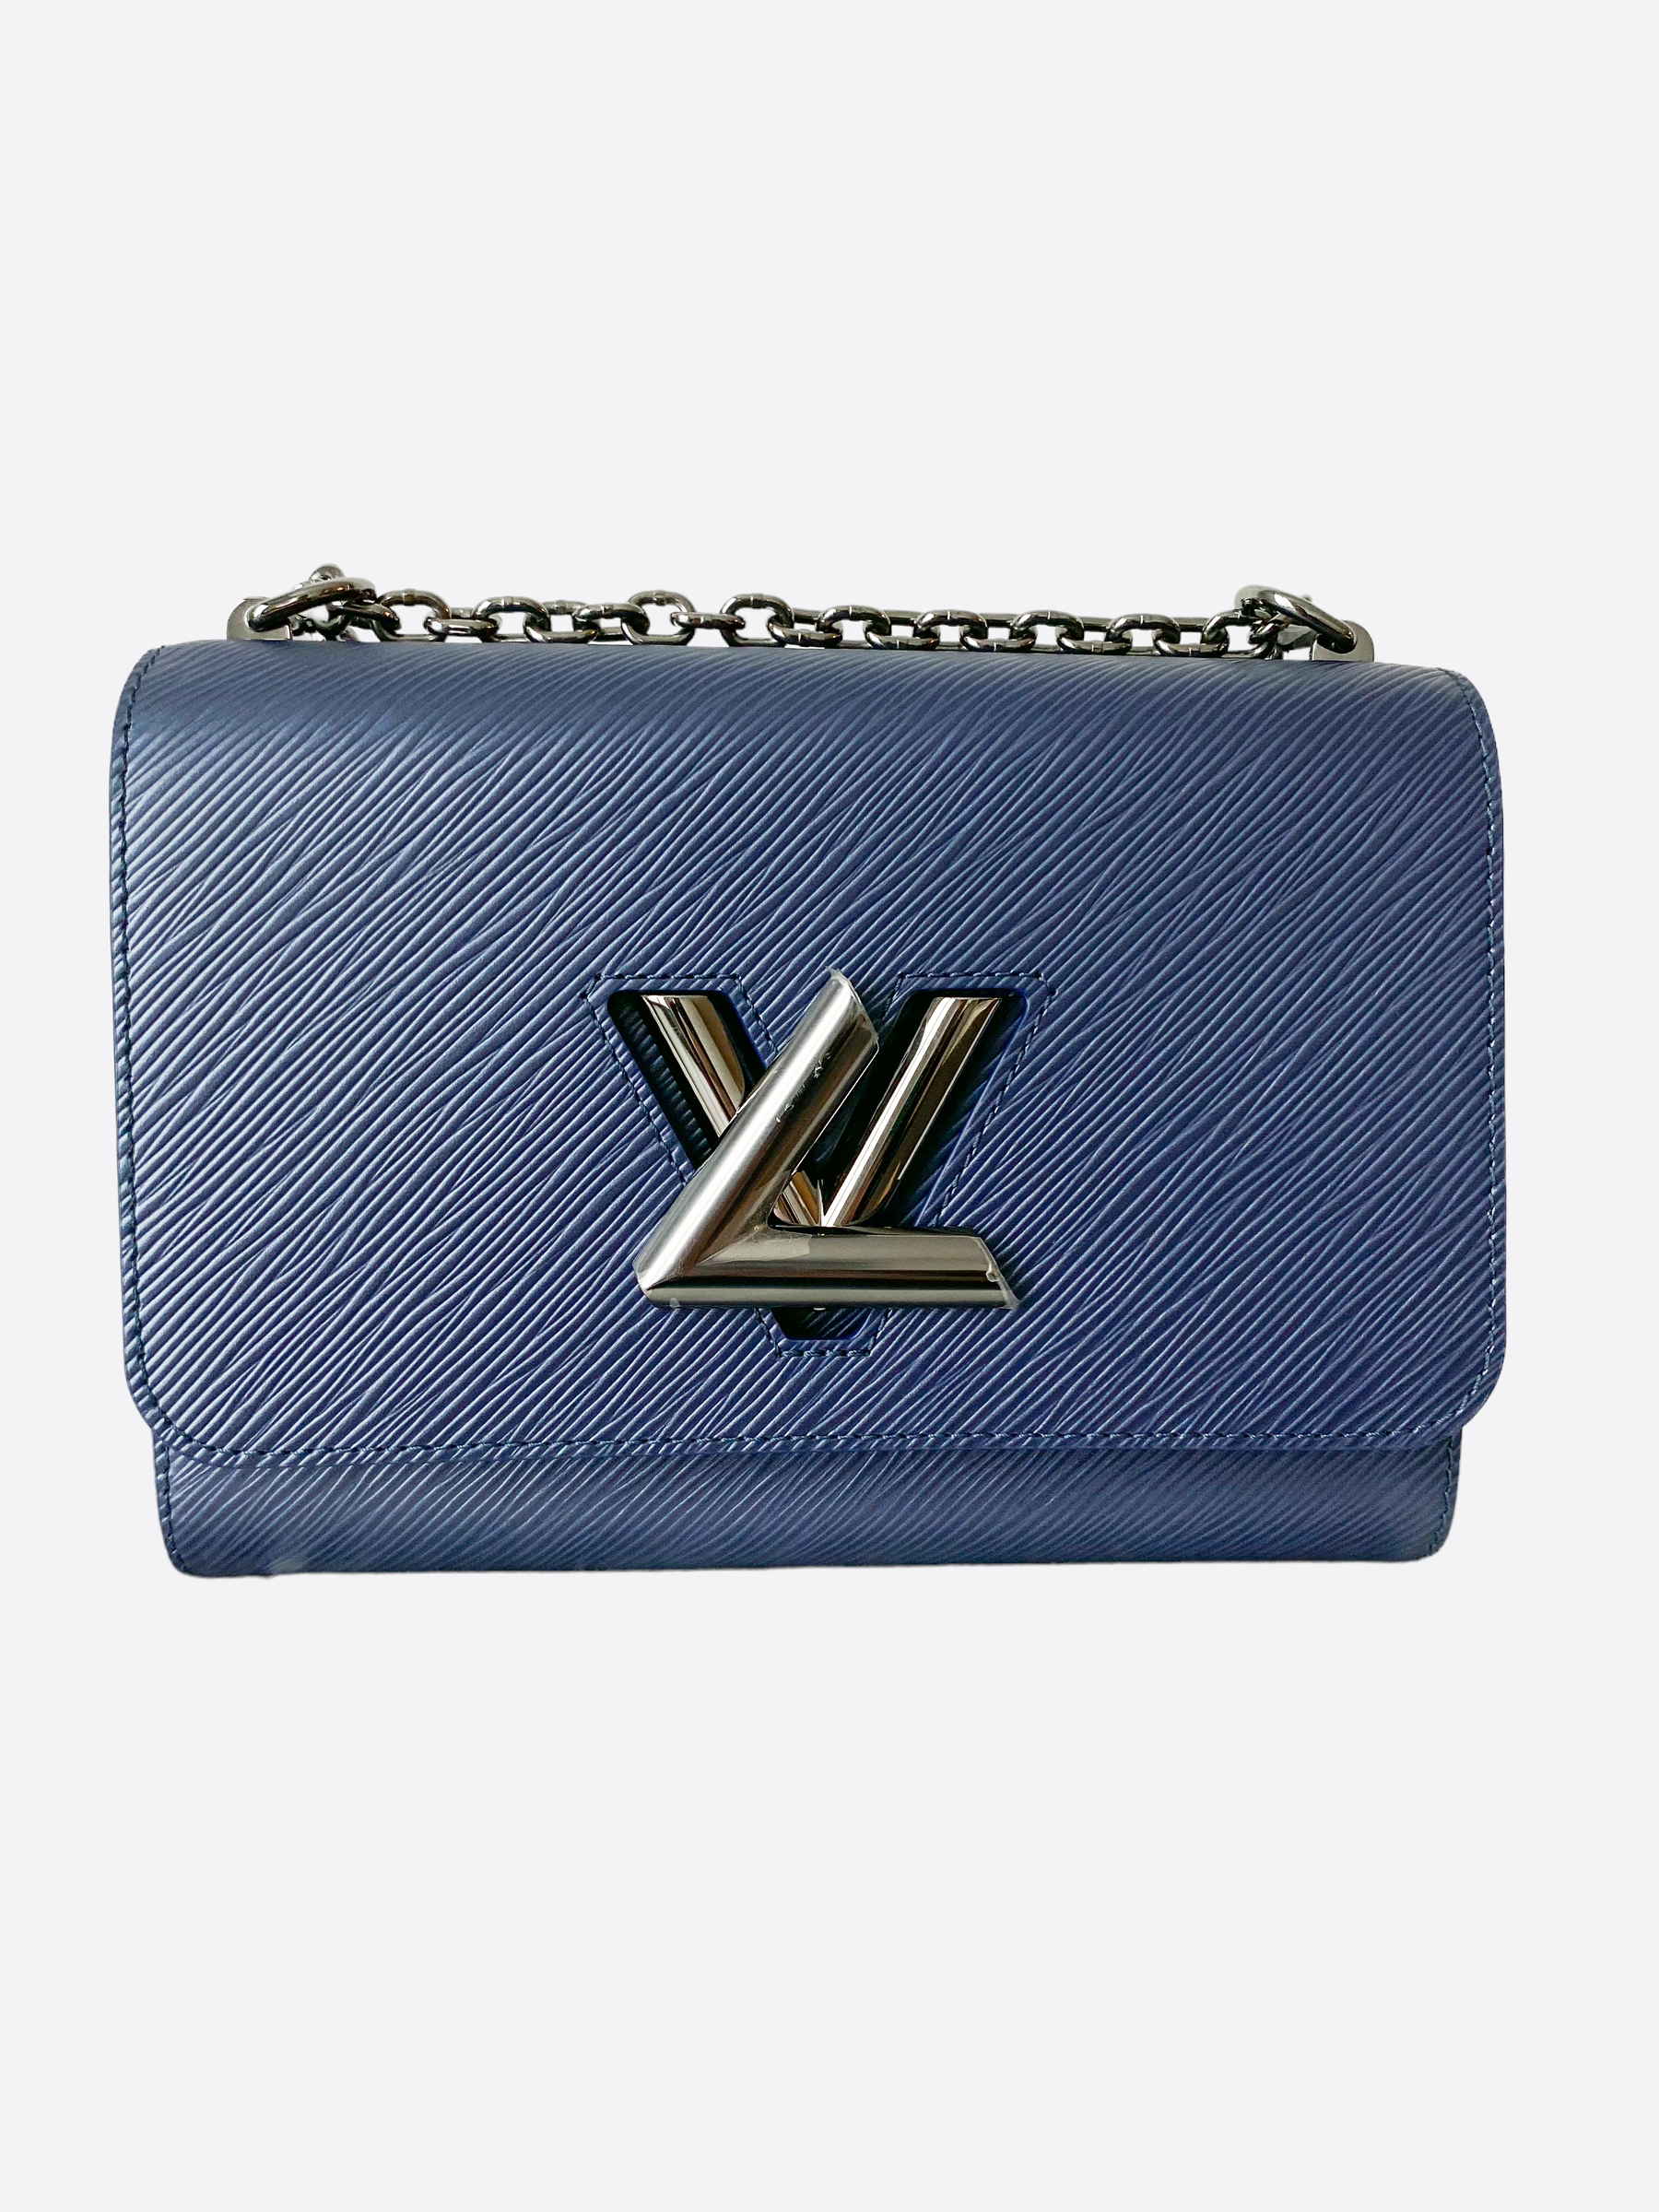 Louis Vuitton, Bags, Soldlouis Vuitton Twist Tote